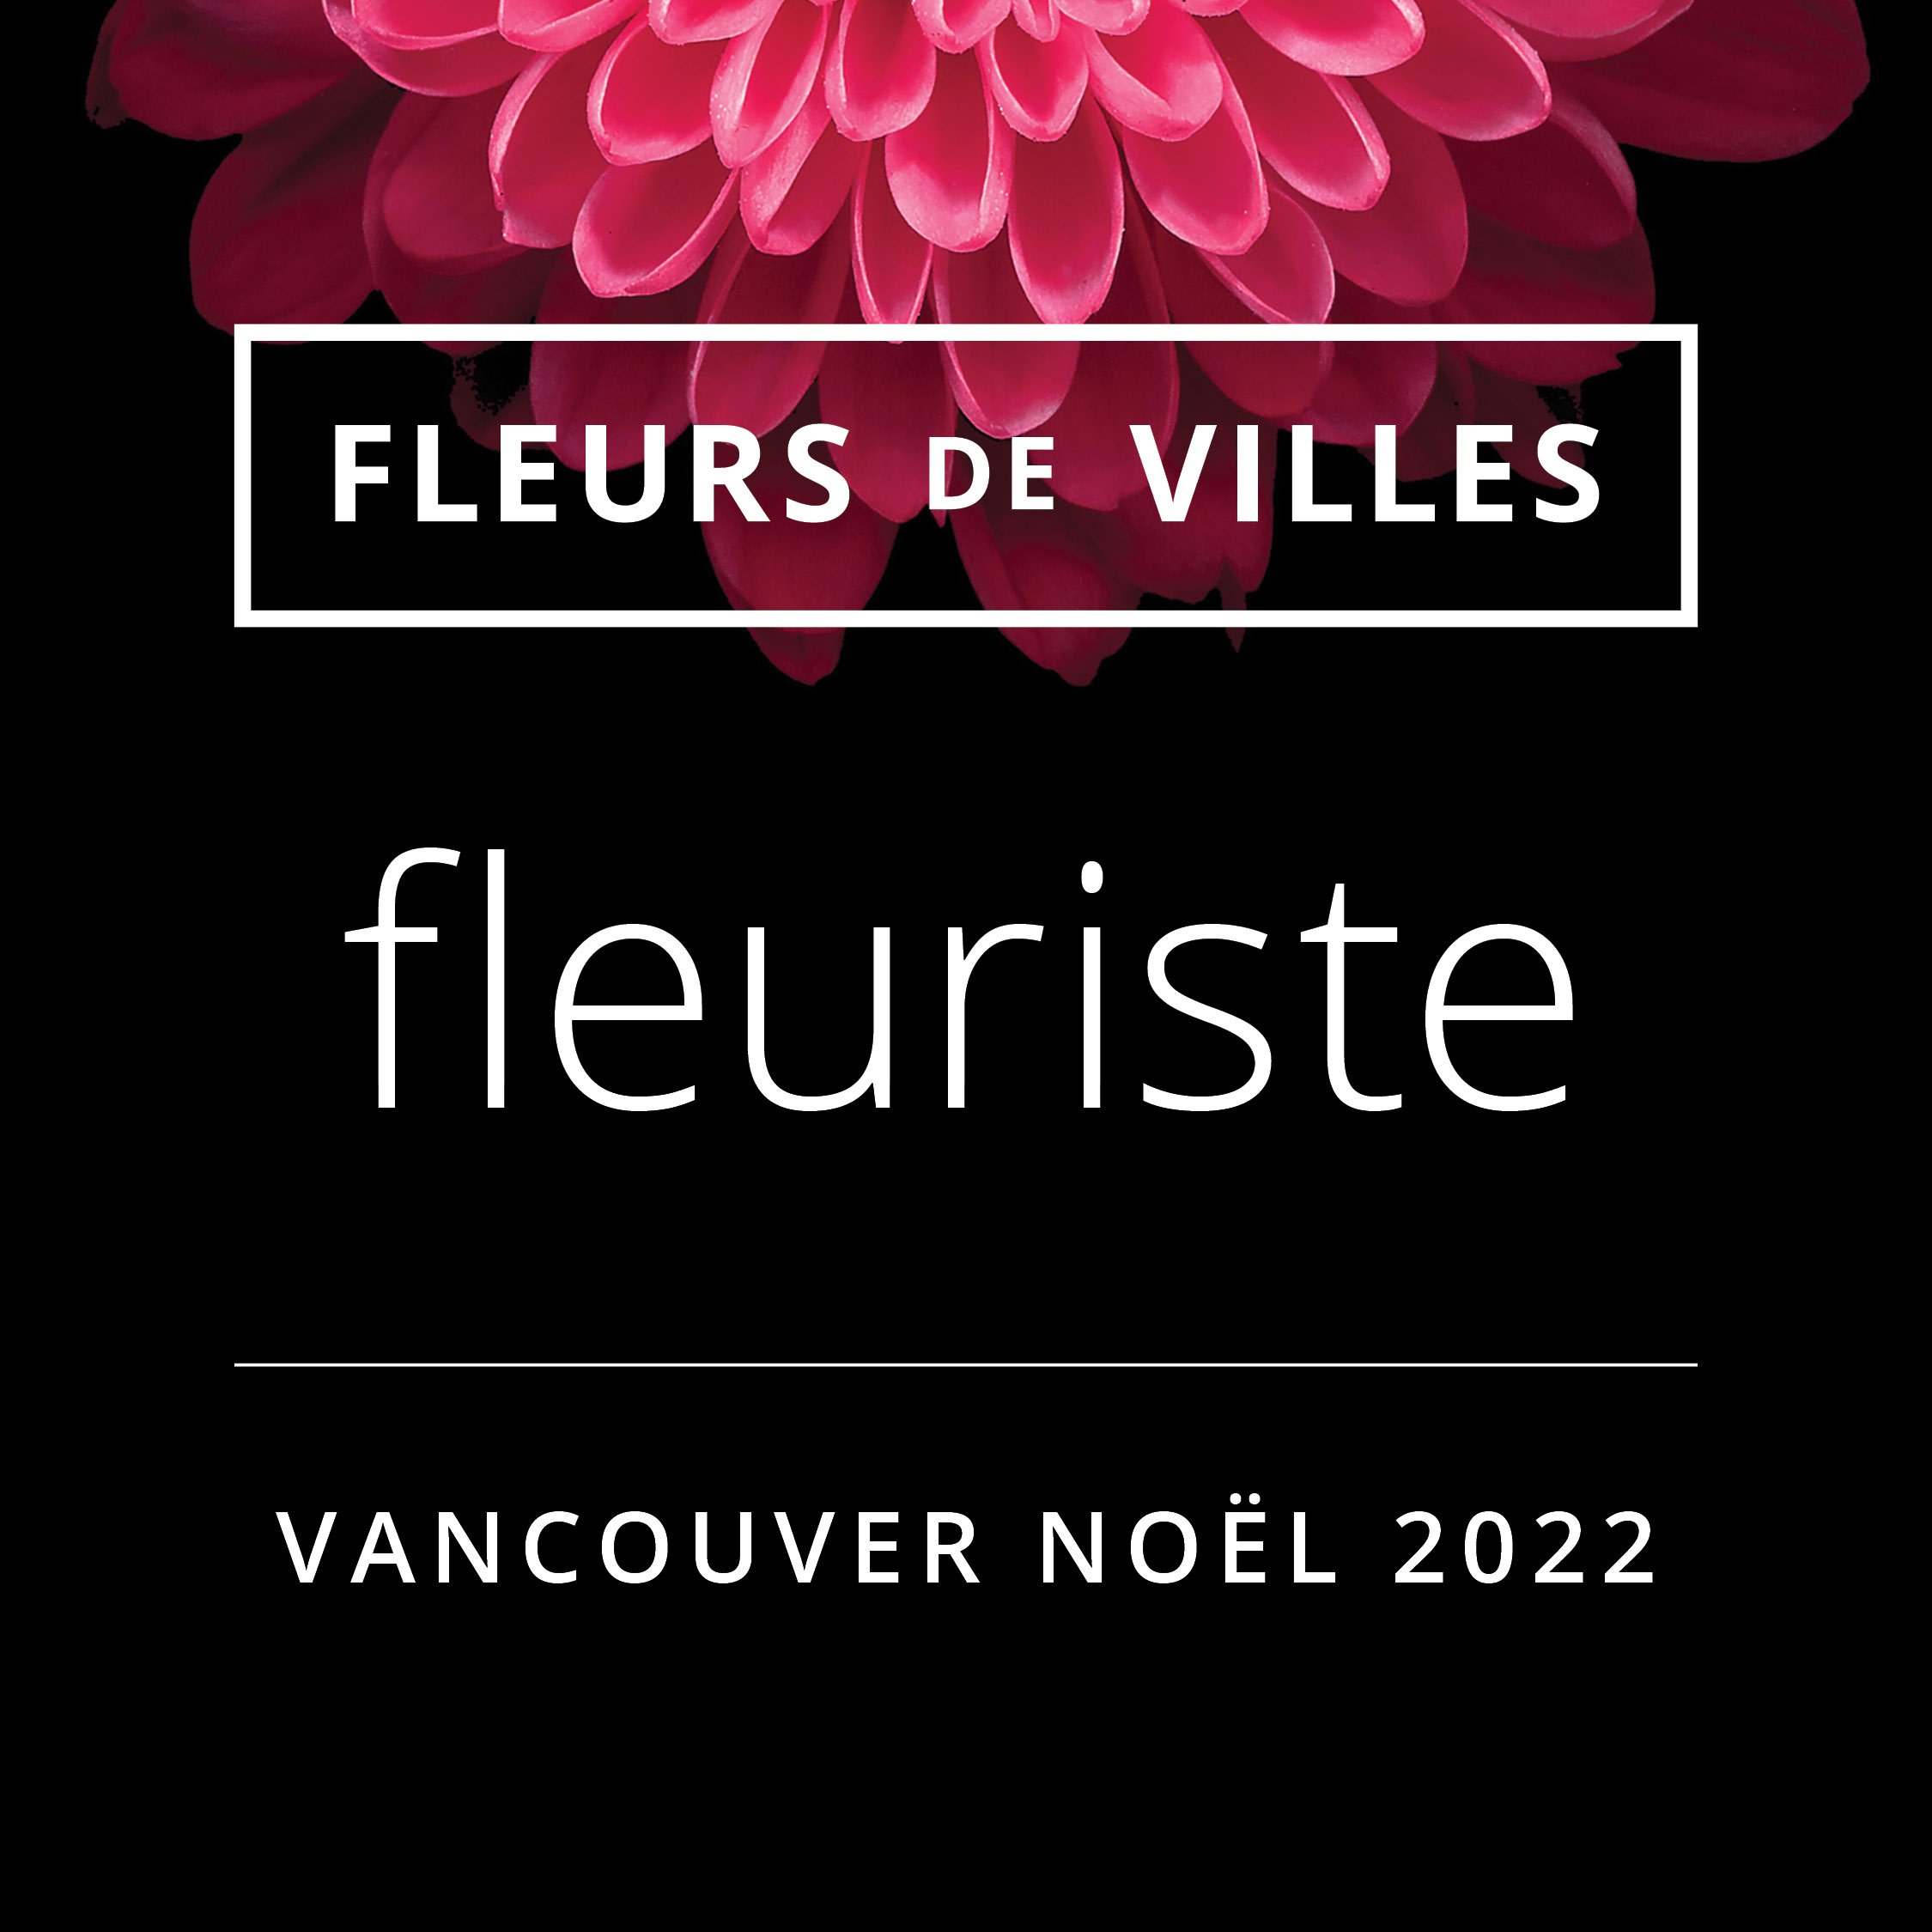 FDV florist badges_Vancouver NOEL 20223.jpg